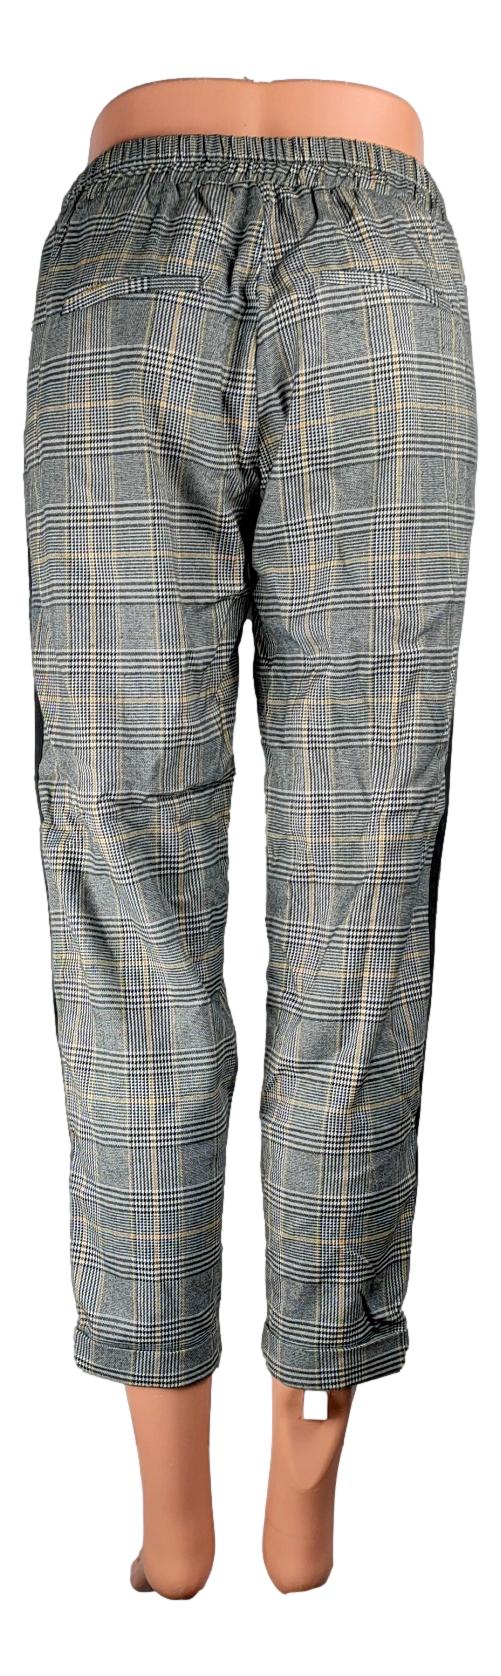 Pantalon Tally Weijl - Taille 38